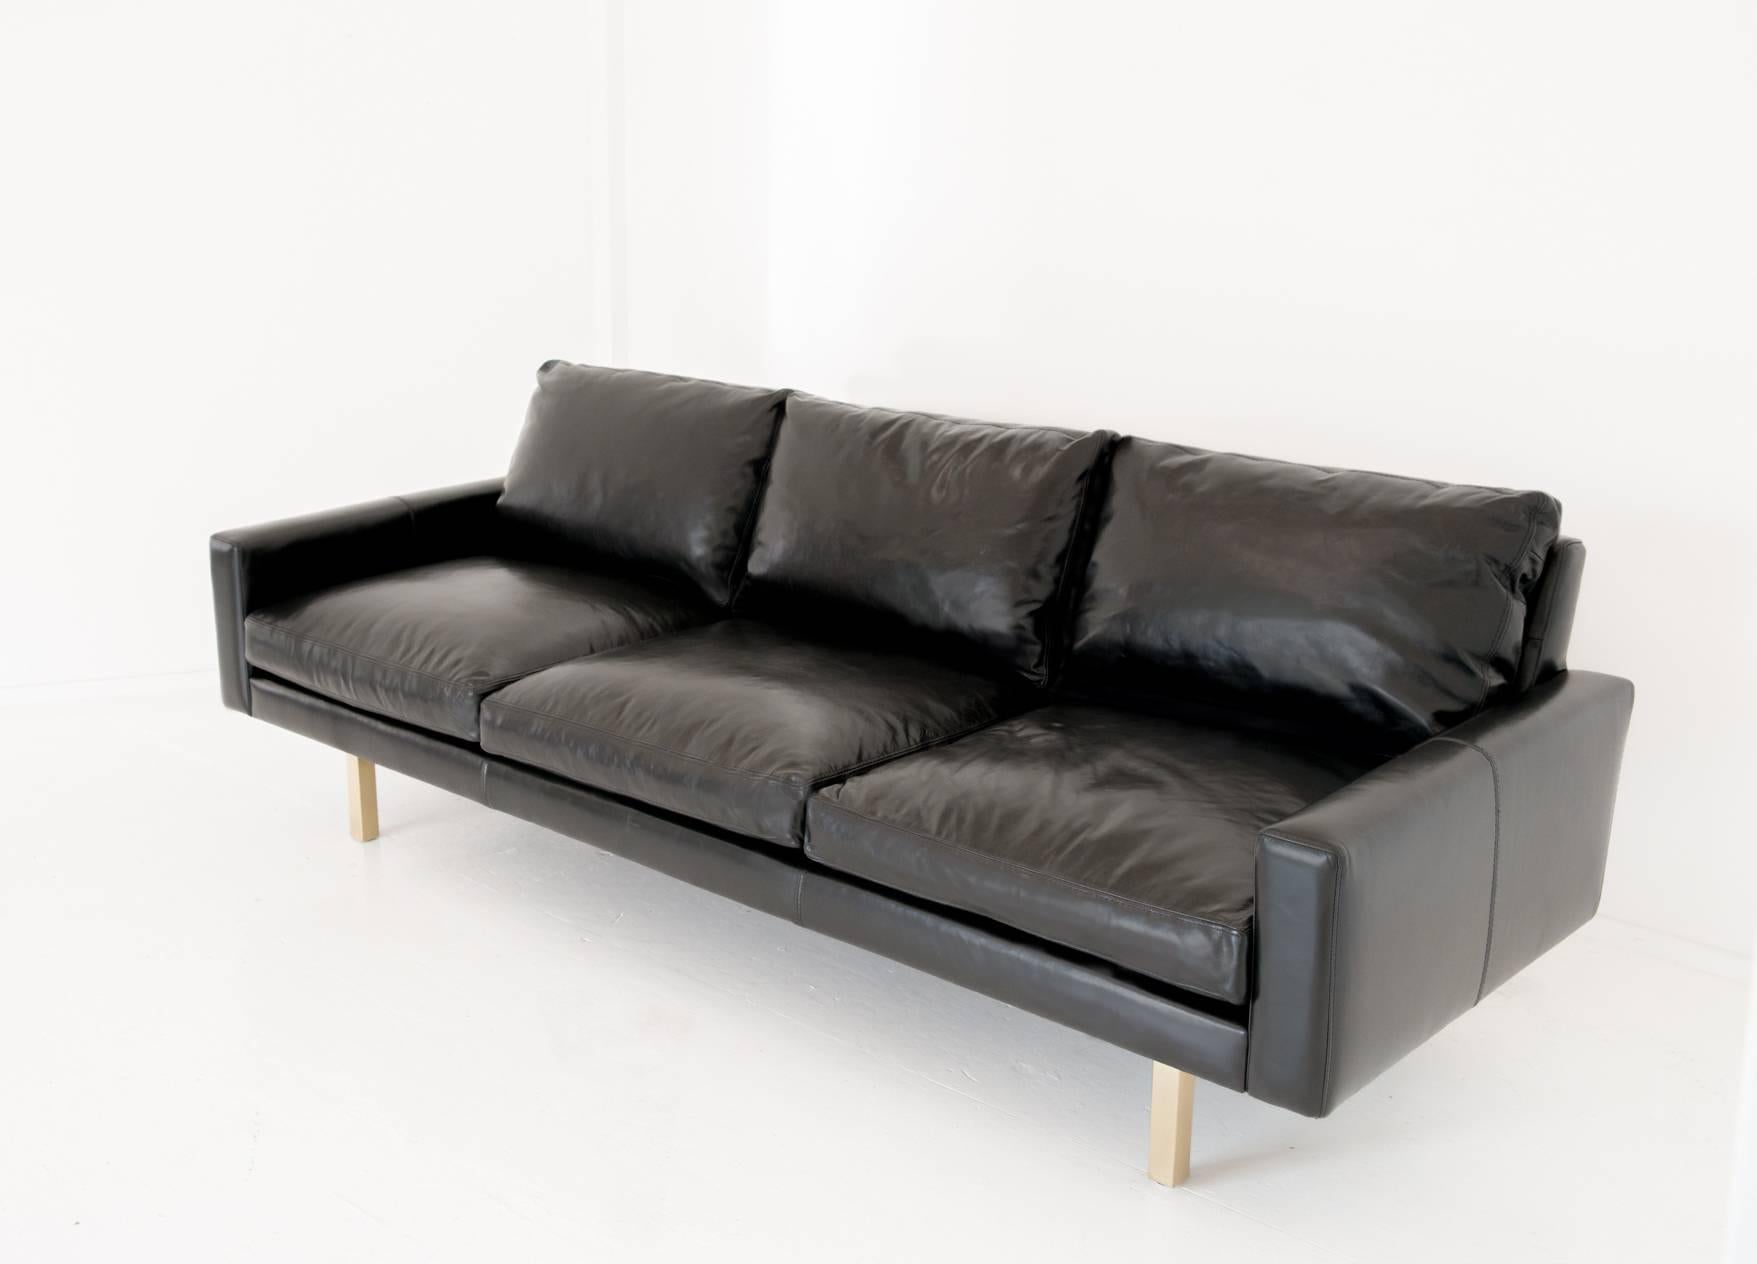 Le canapé Standard est d'une simplicité trompeuse à première vue. En y regardant de plus près, il parvient à être à la fois moderne et nostalgique, le canapé que vous emporterez avec vous de maison en maison pendant des décennies.

Tapissé d'un cuir